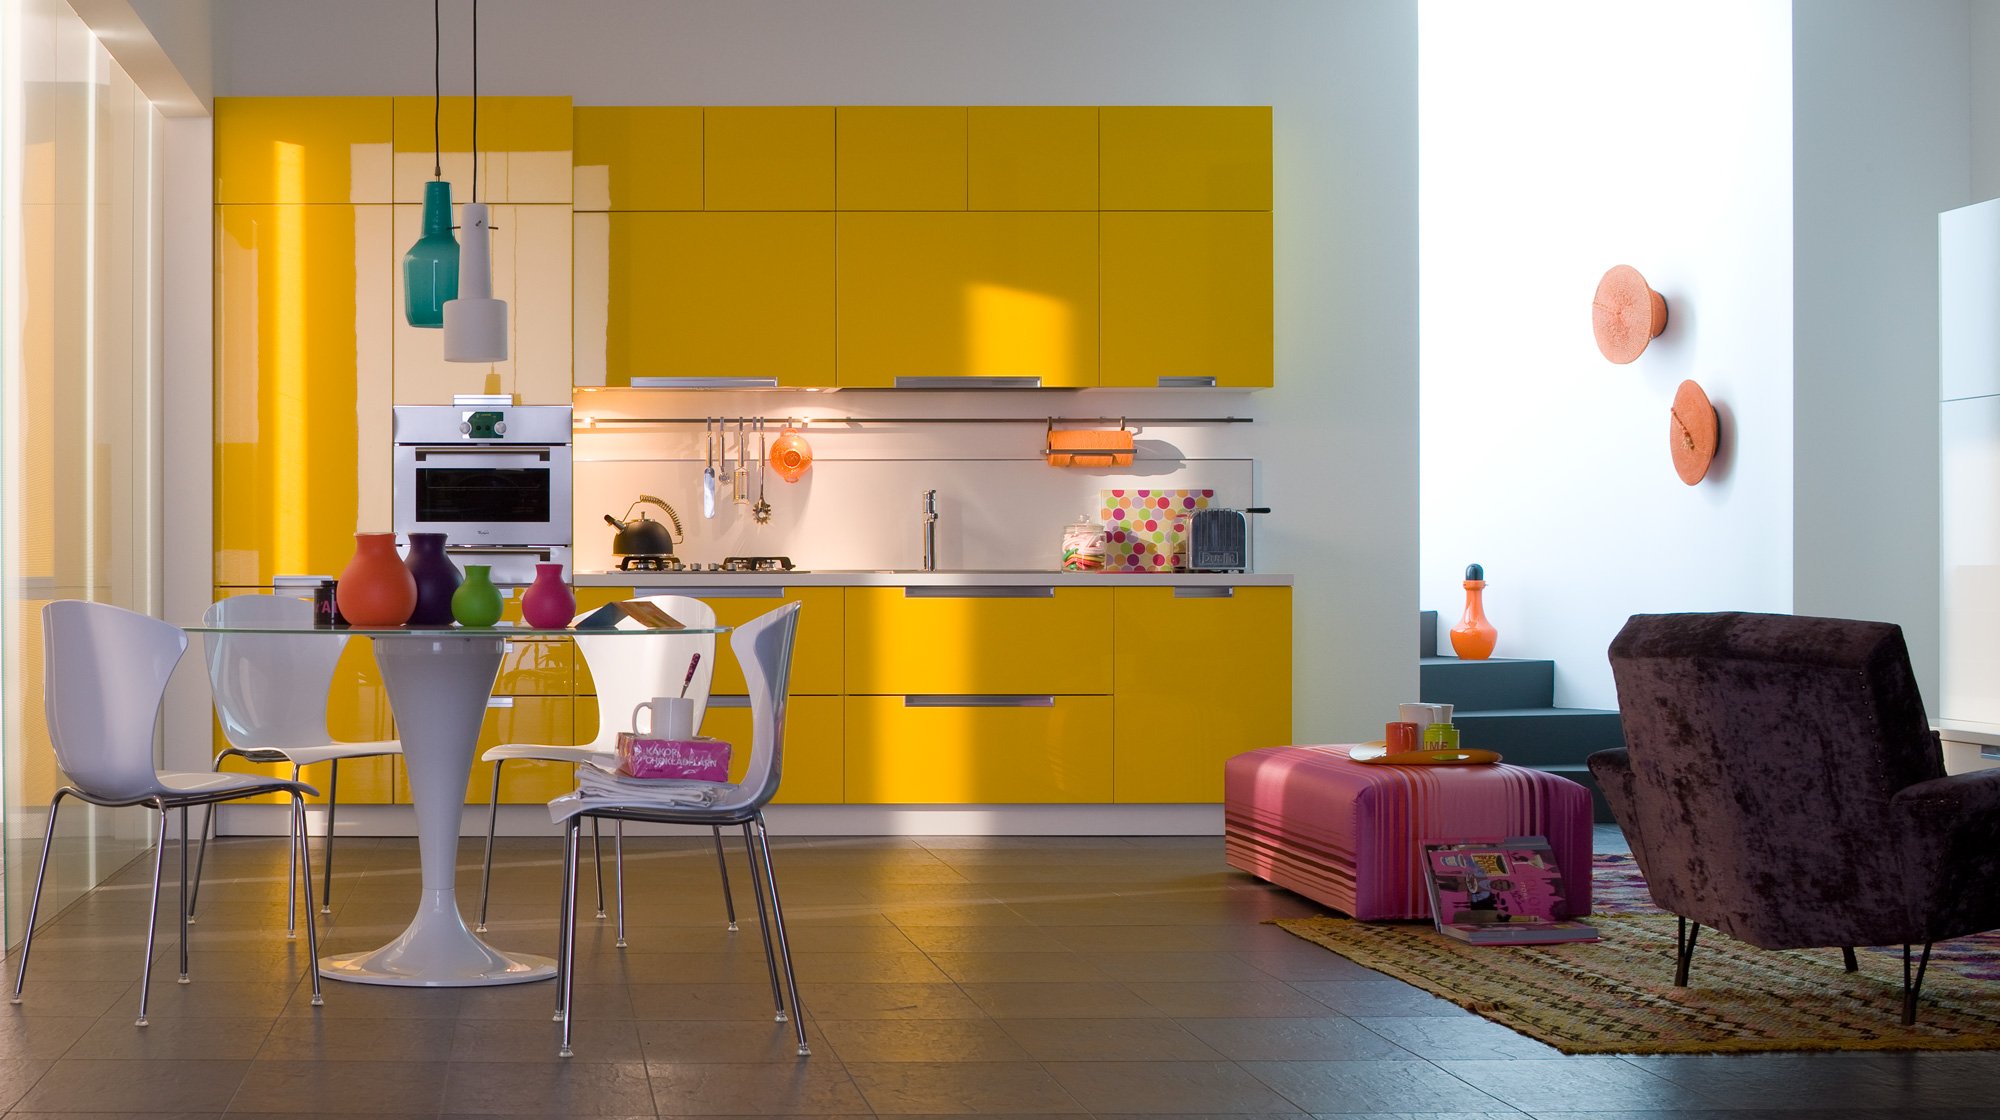 Желтый цвет в интерьере кухни, с какими цветами сочетается желтый? Фото кухонь в интерьере